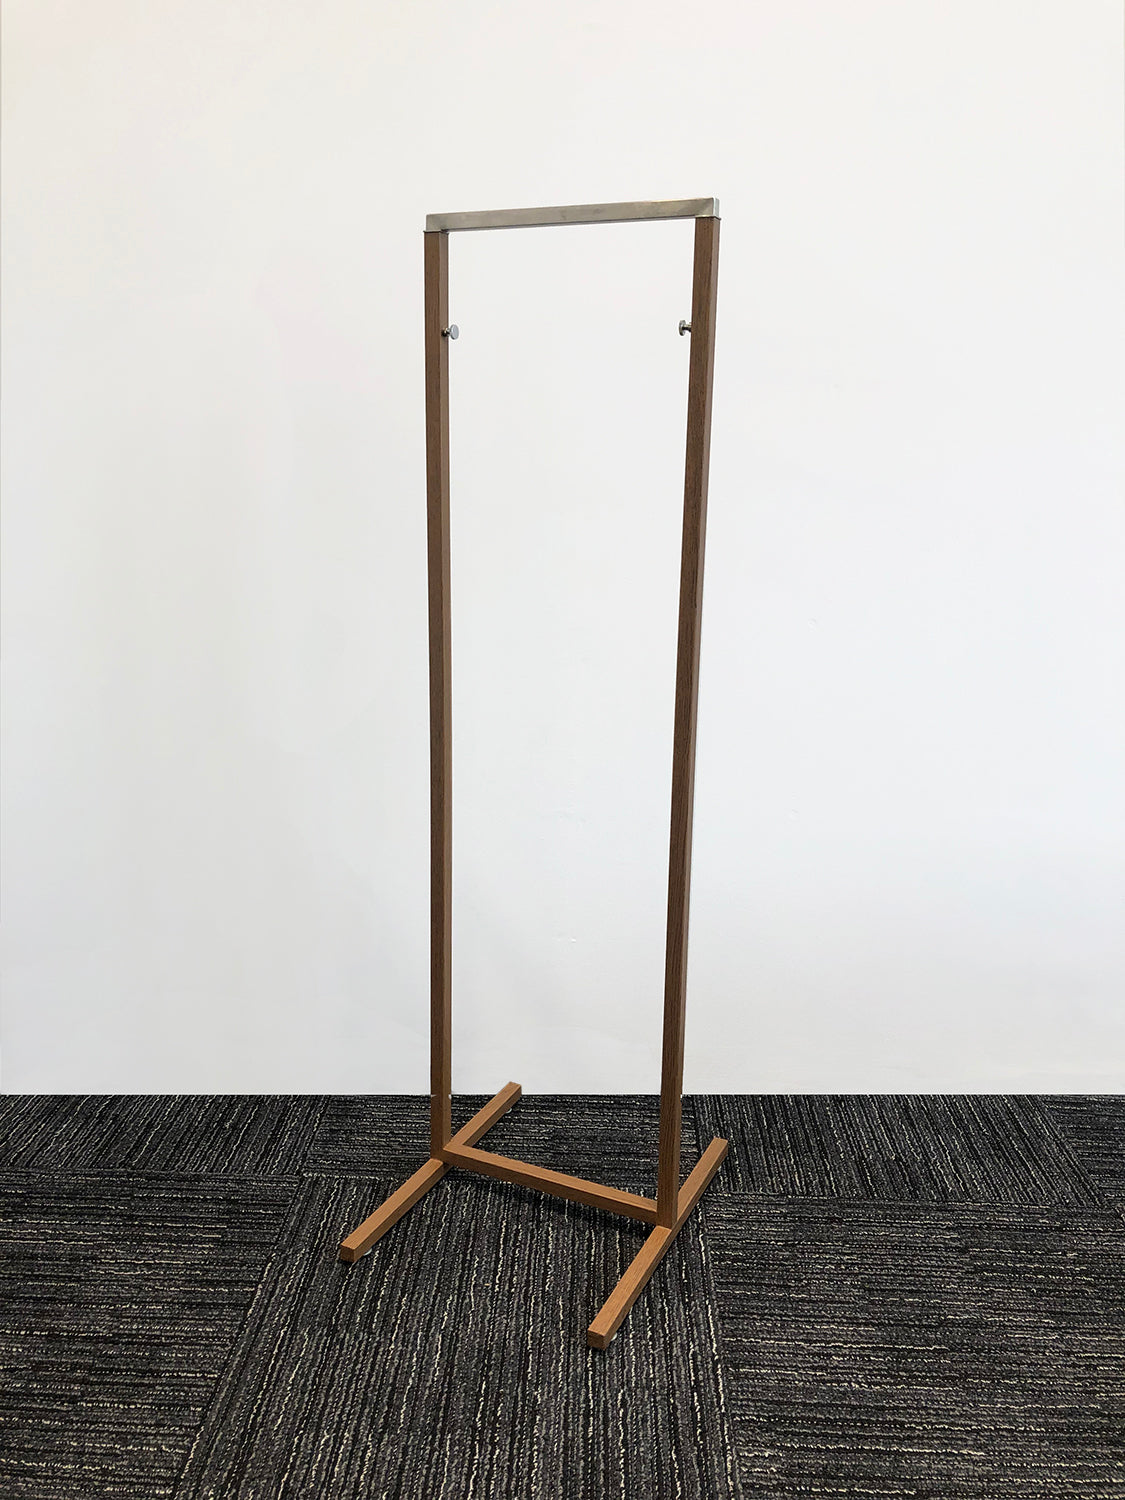 Hanger rack - Wood grain［Unused］